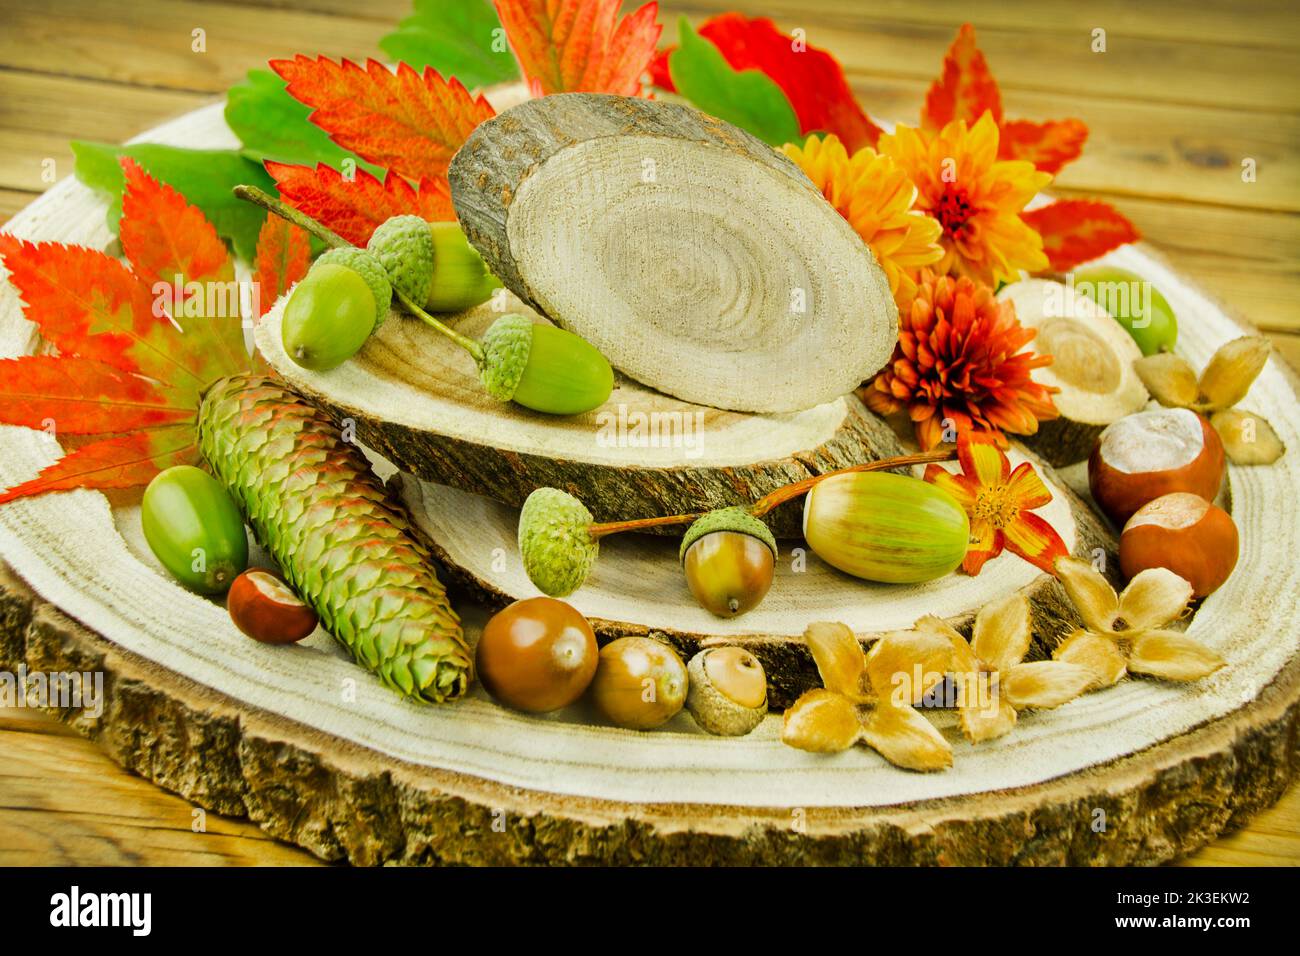 Natürliche Dekoration im Herbst mit Kastanien, Eicheln, Blumen und Herbstlaub auf Hol Foto de stock